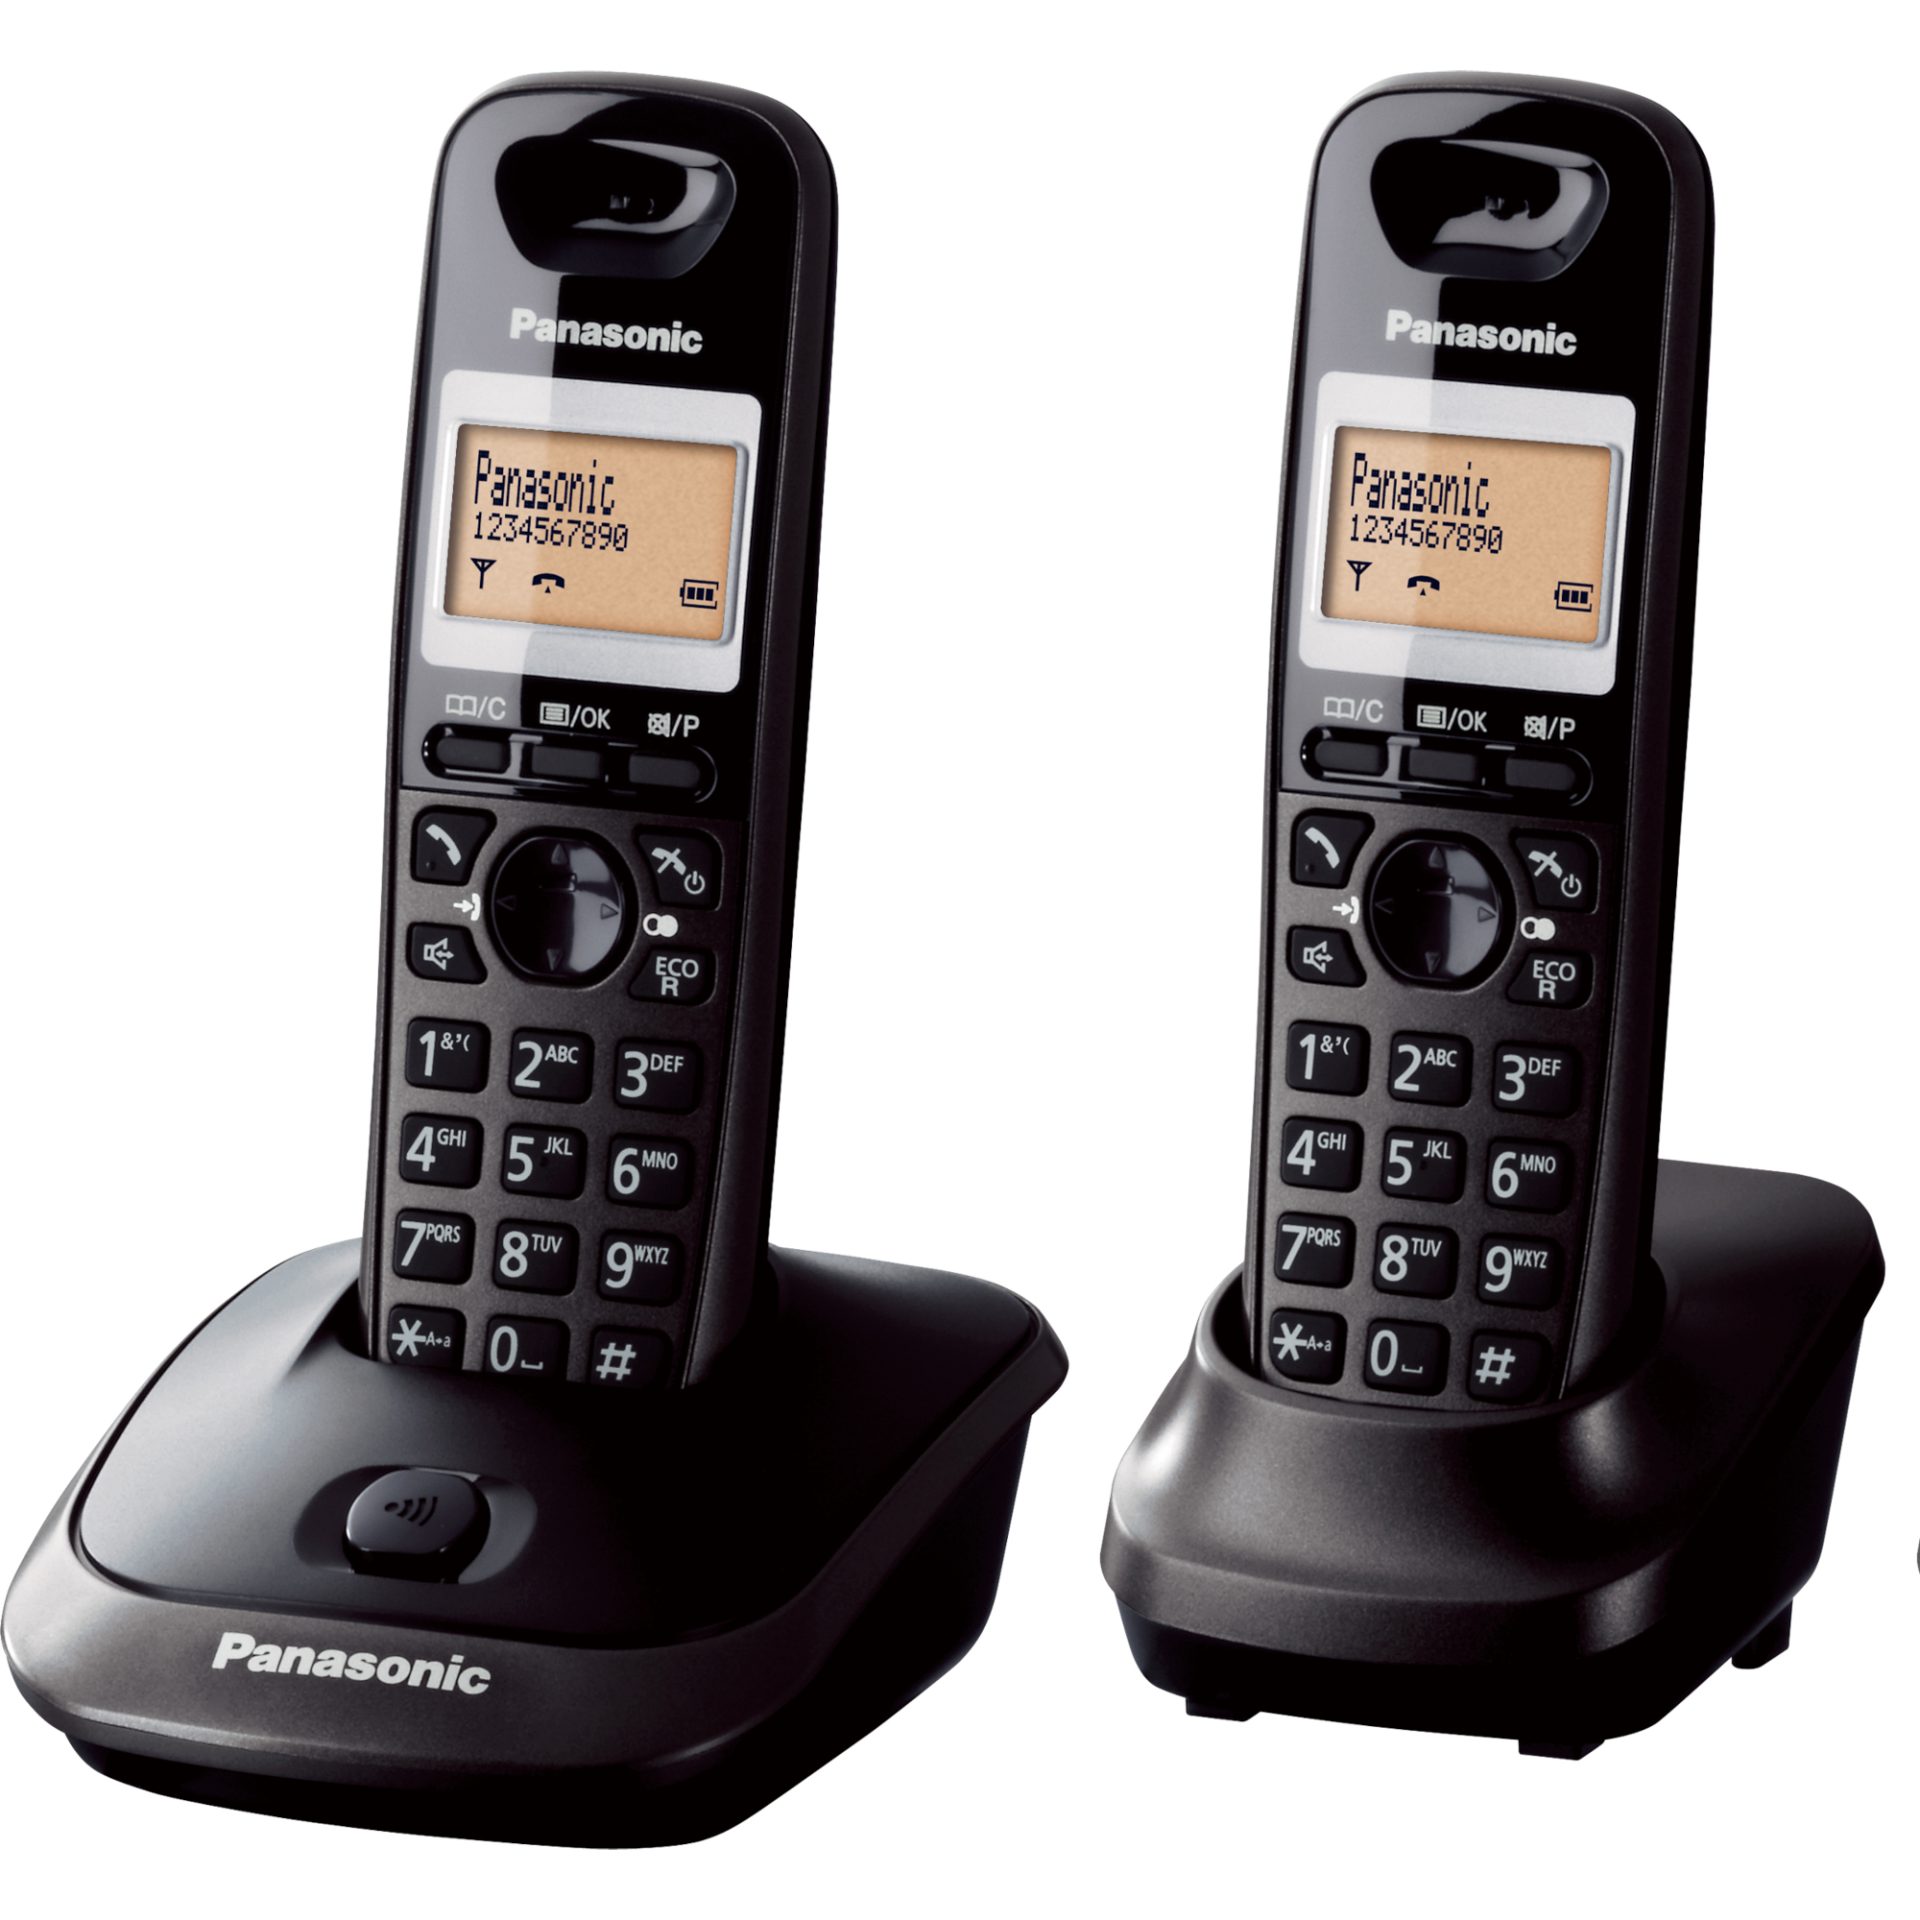 Panasonic KX-TG2512 DECT bezdrátový telefon se 2 posluchači (vysoká kvalita hovoru, podsvícený 1,4palcový LCD displej, hands-free), černý